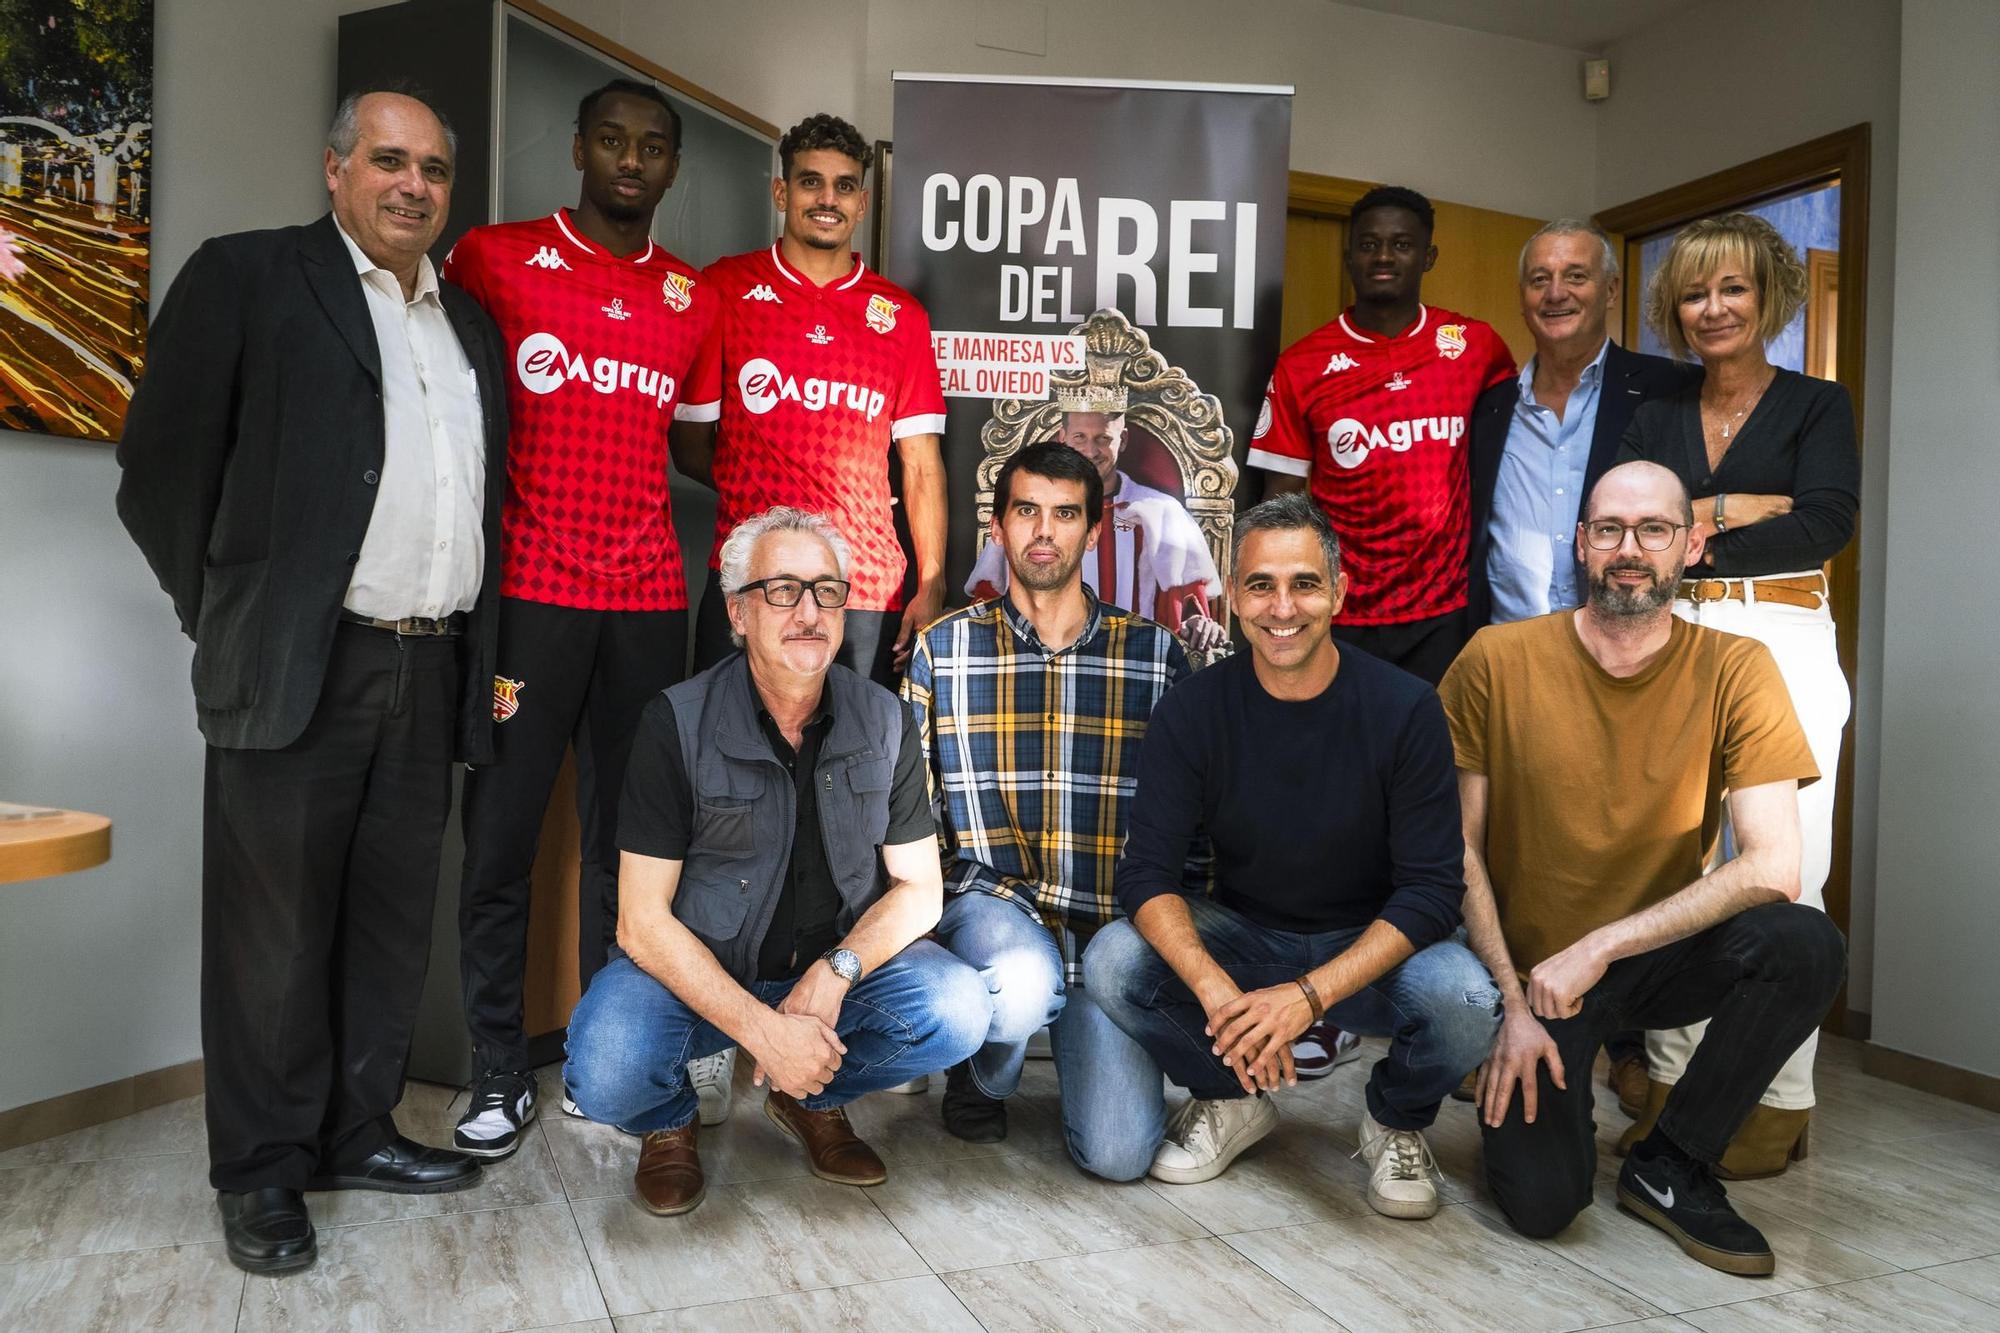 Imatges de la presentació de la campanya "Manresa és el rei", prèvia al CE Manresa-Reial Oviedo de Copa